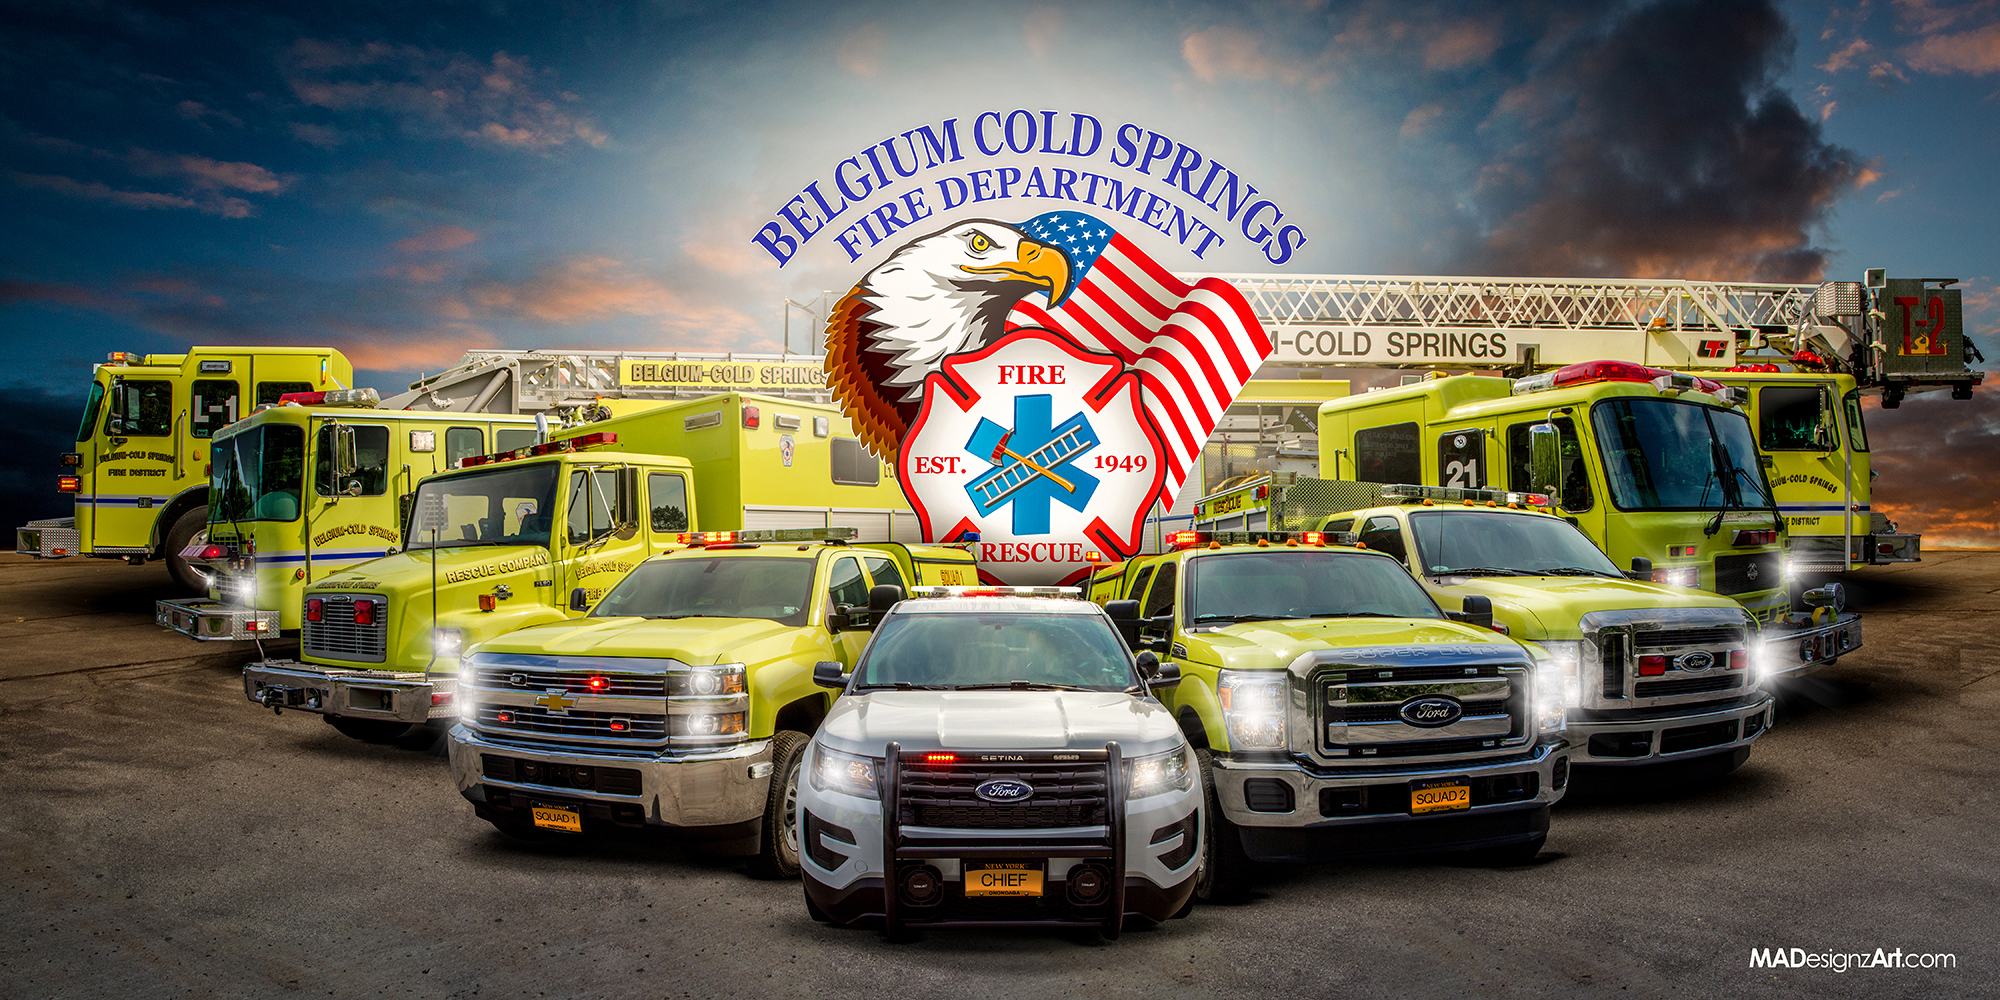 Belgium Cold Springs Fire Department Fleet & Apparatus